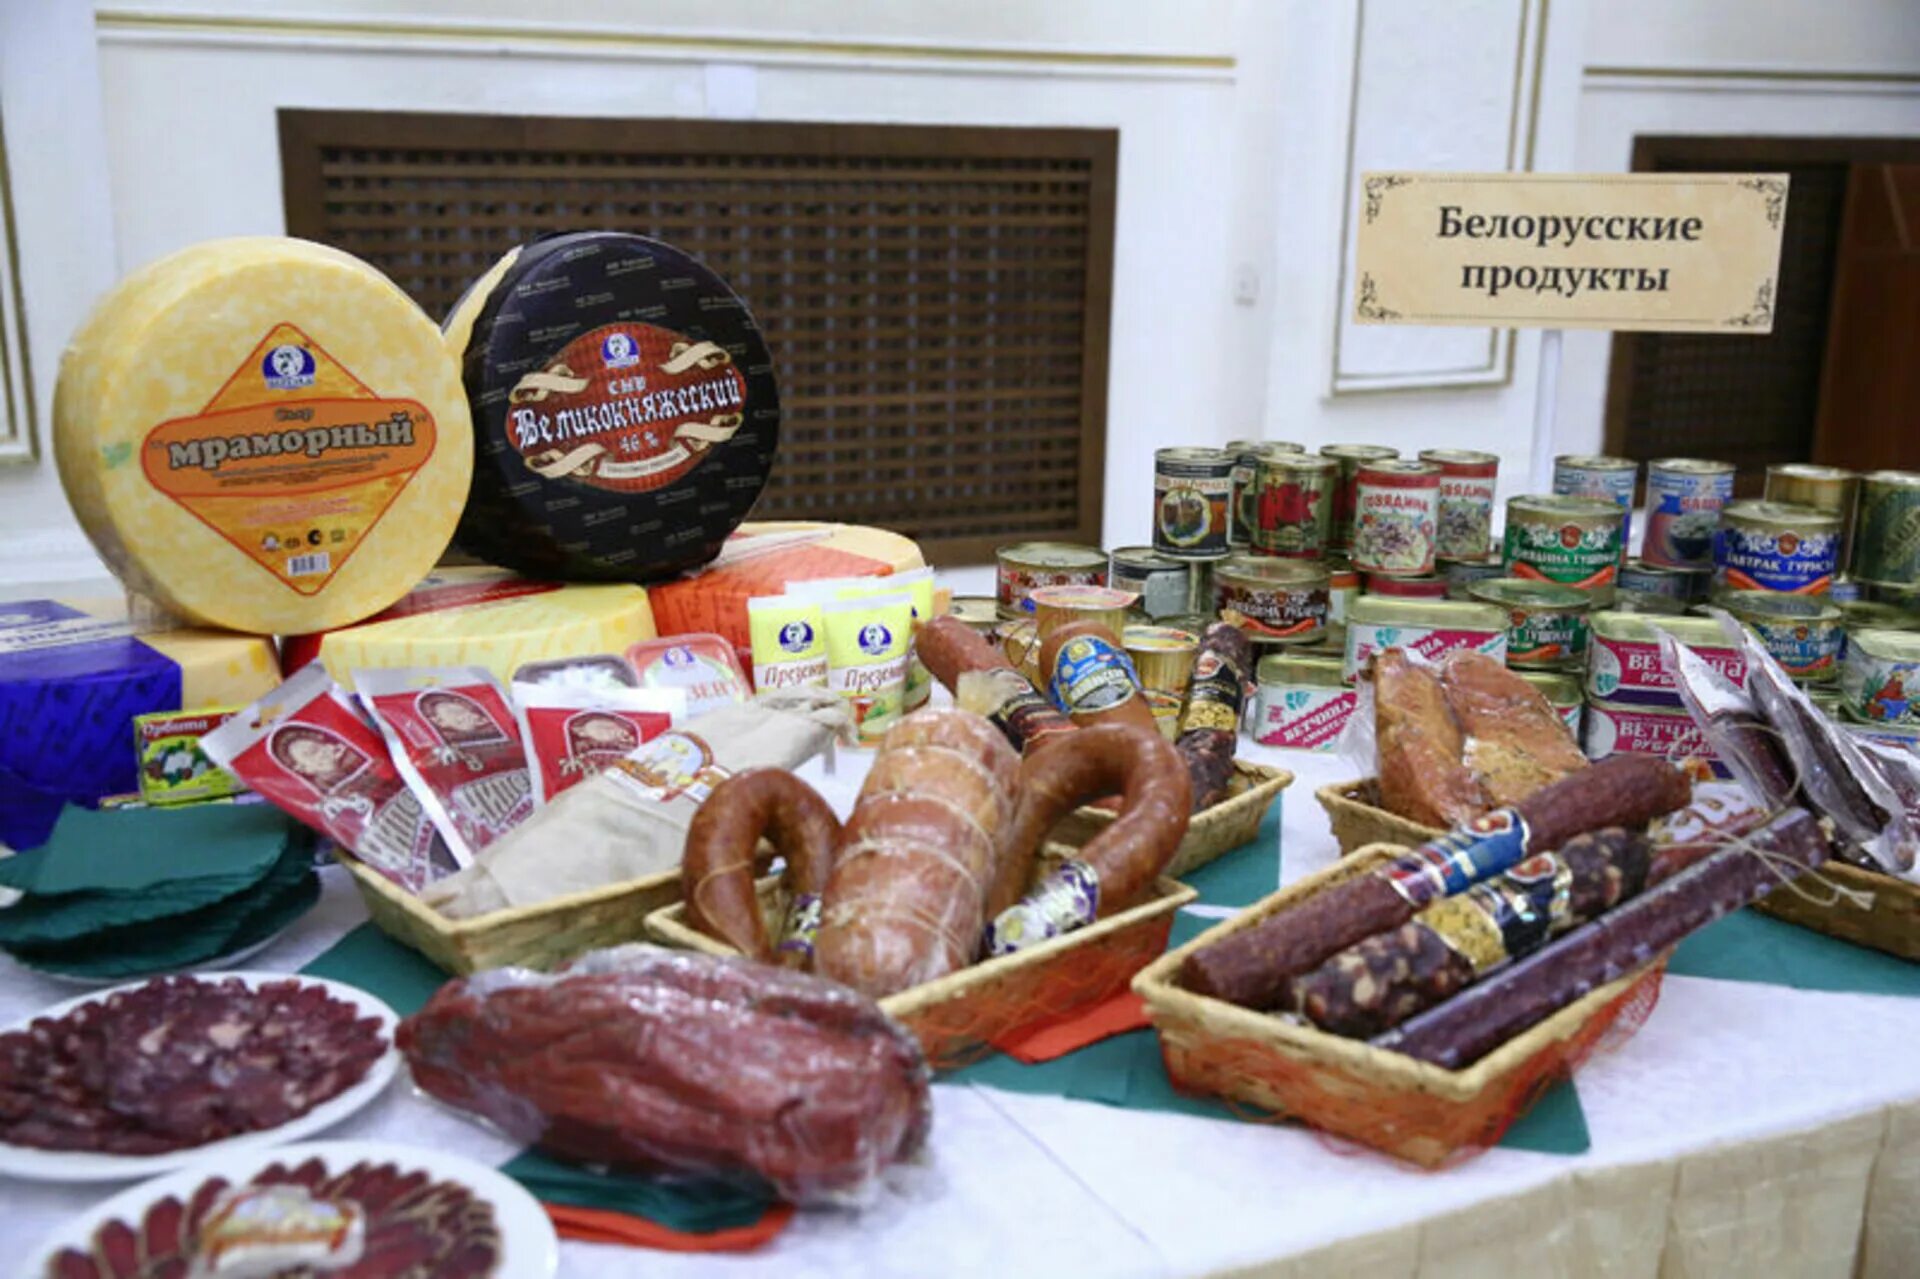 Купить товар в беларуси. Белорусские продукты. Белорусские товары. Белорусские продукты товар. Белорусская продукция продукты.